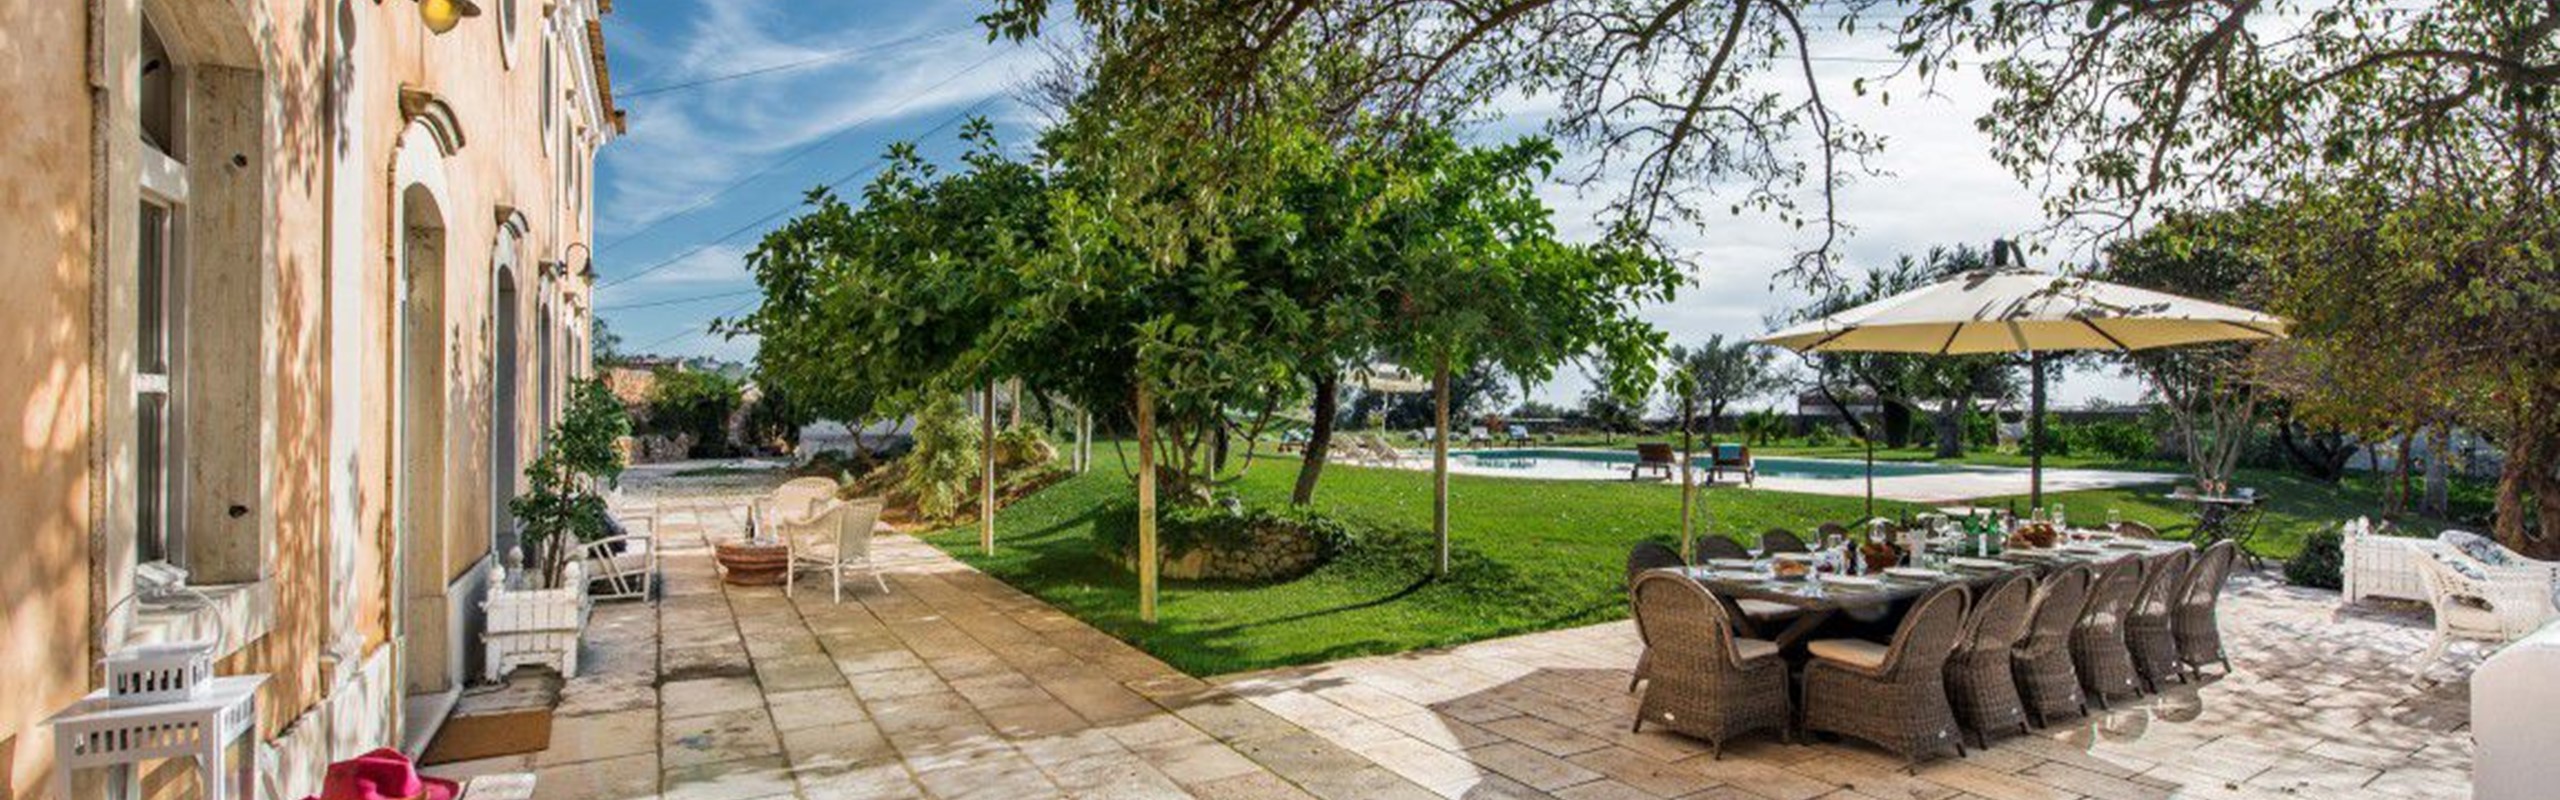 Unique Luxury Rental Villa In Algarve